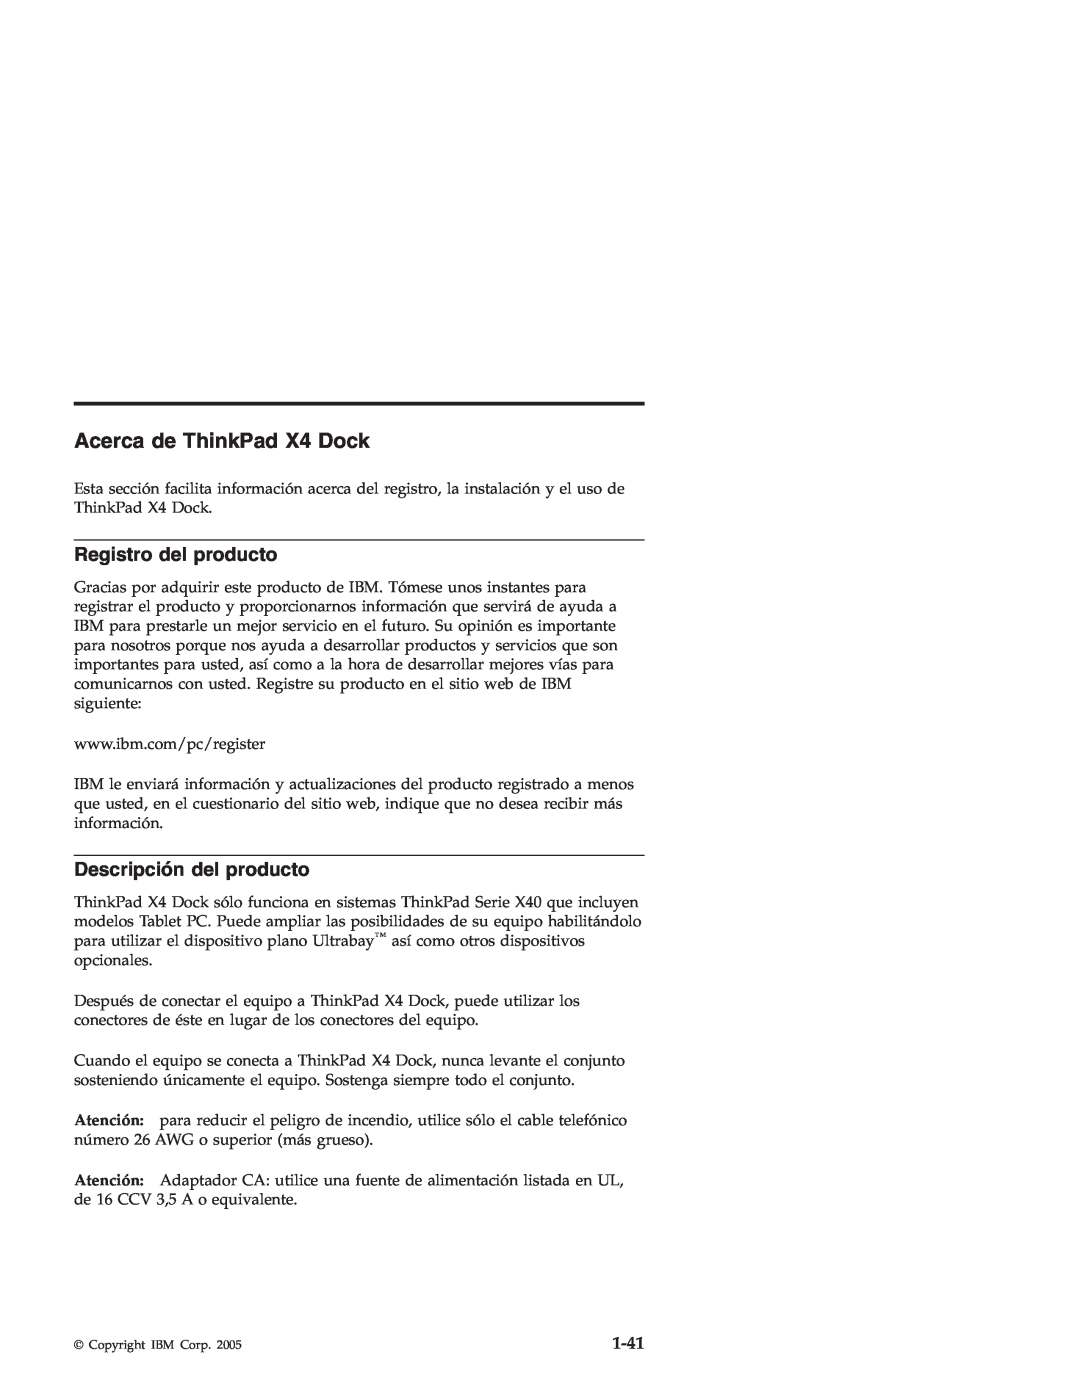 IBM manual Acerca de ThinkPad X4 Dock, Registro del producto, Descripción del producto, 1-41 